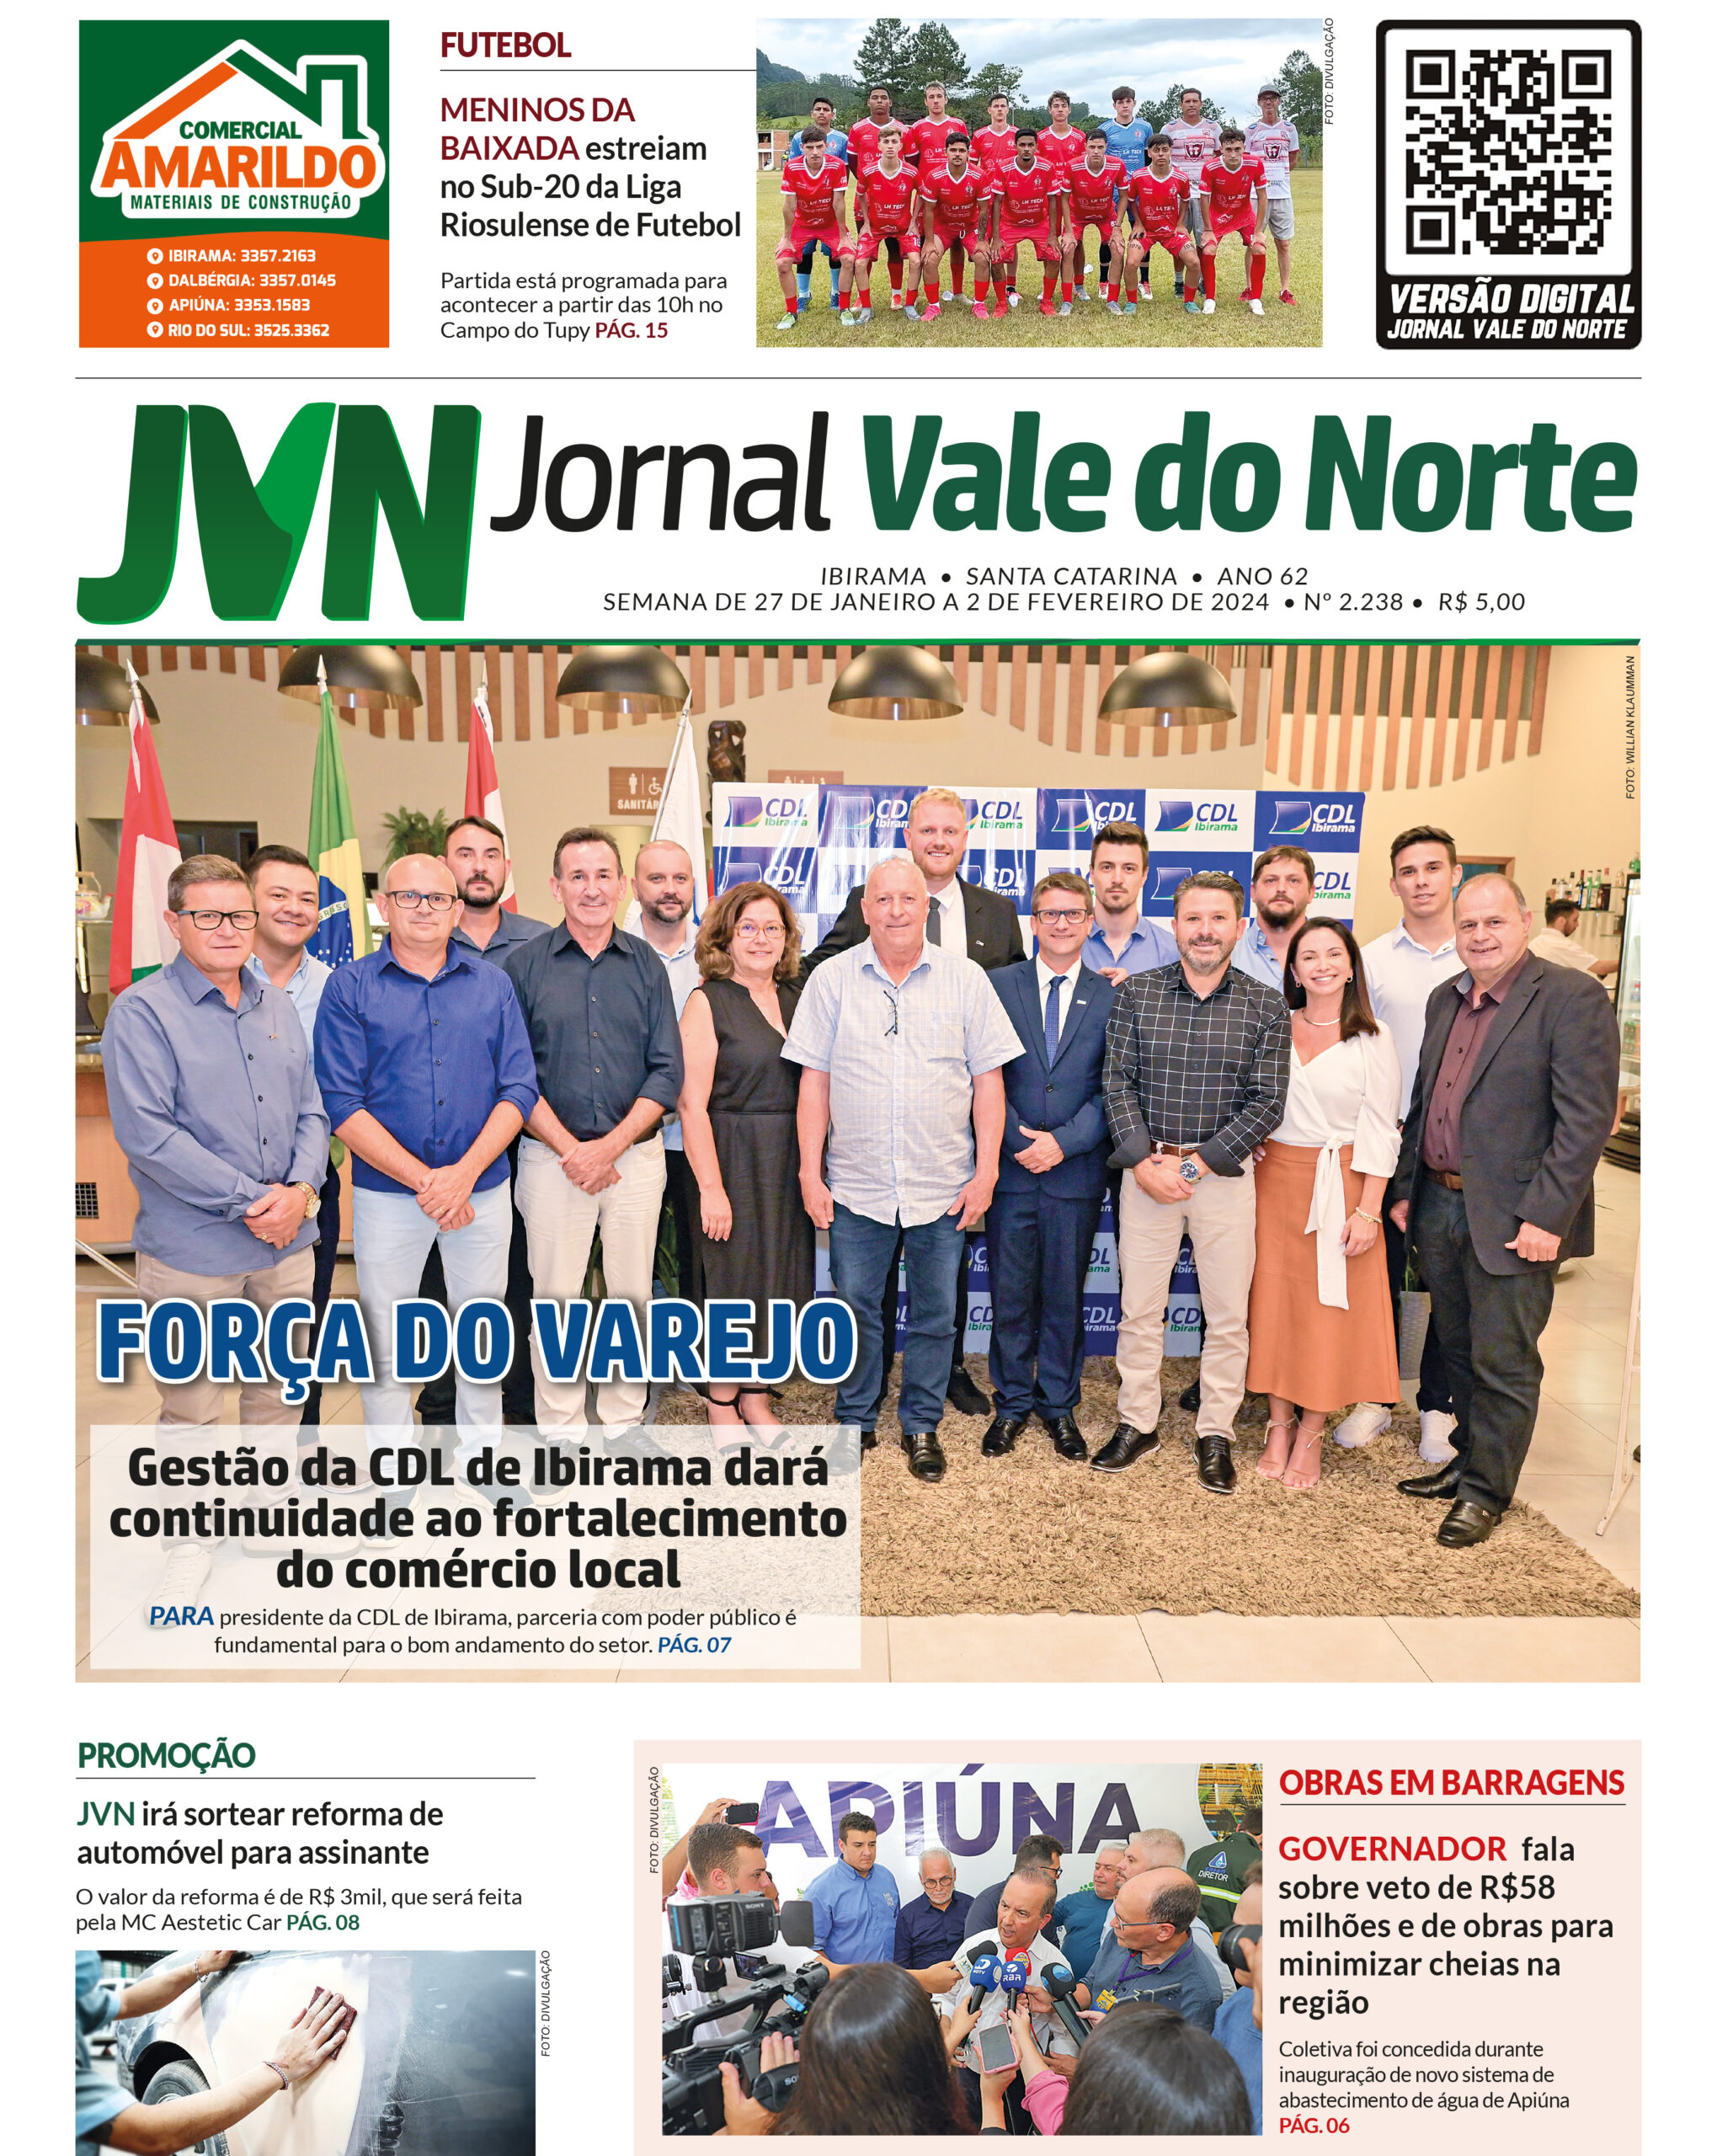 JORNAL VALE DO NORTE DE 27 DE JANEIRO A 2 DE FEVEREIRO